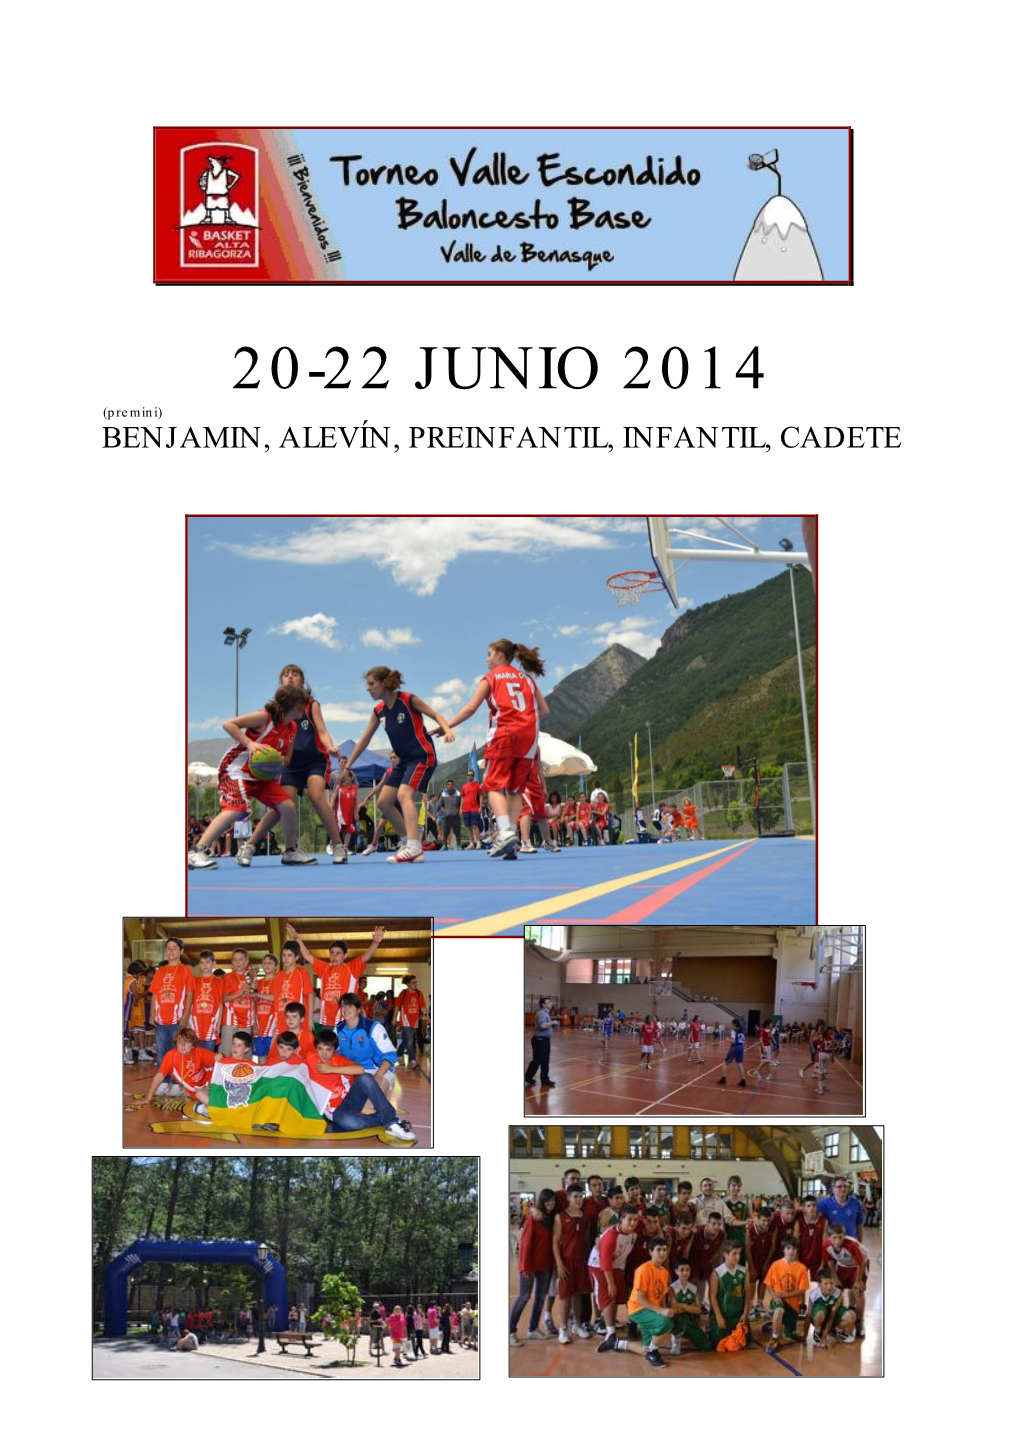 20-22 JUNIO 2014 (Premini) BENJAMIN, ALEVÍN, PREINFANTIL, INFANTIL, CADETE